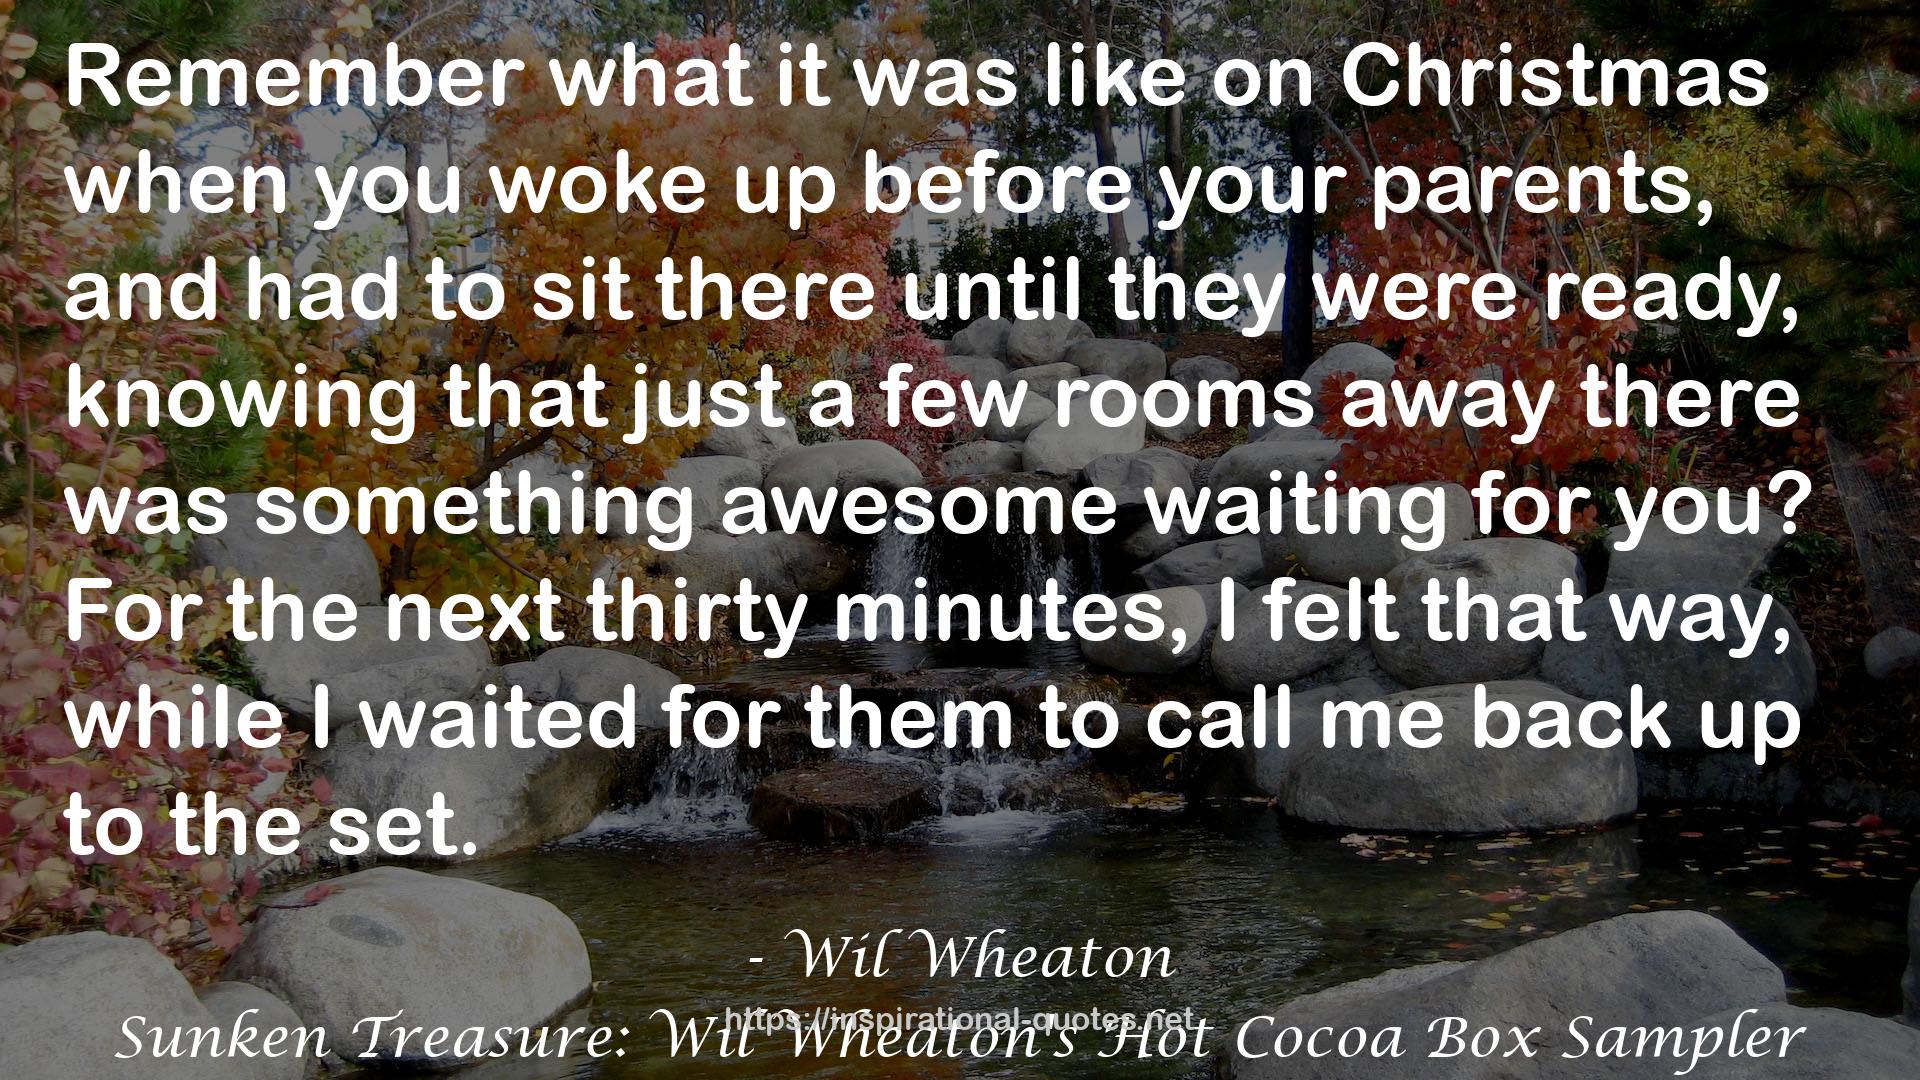 Sunken Treasure: Wil Wheaton's Hot Cocoa Box Sampler QUOTES